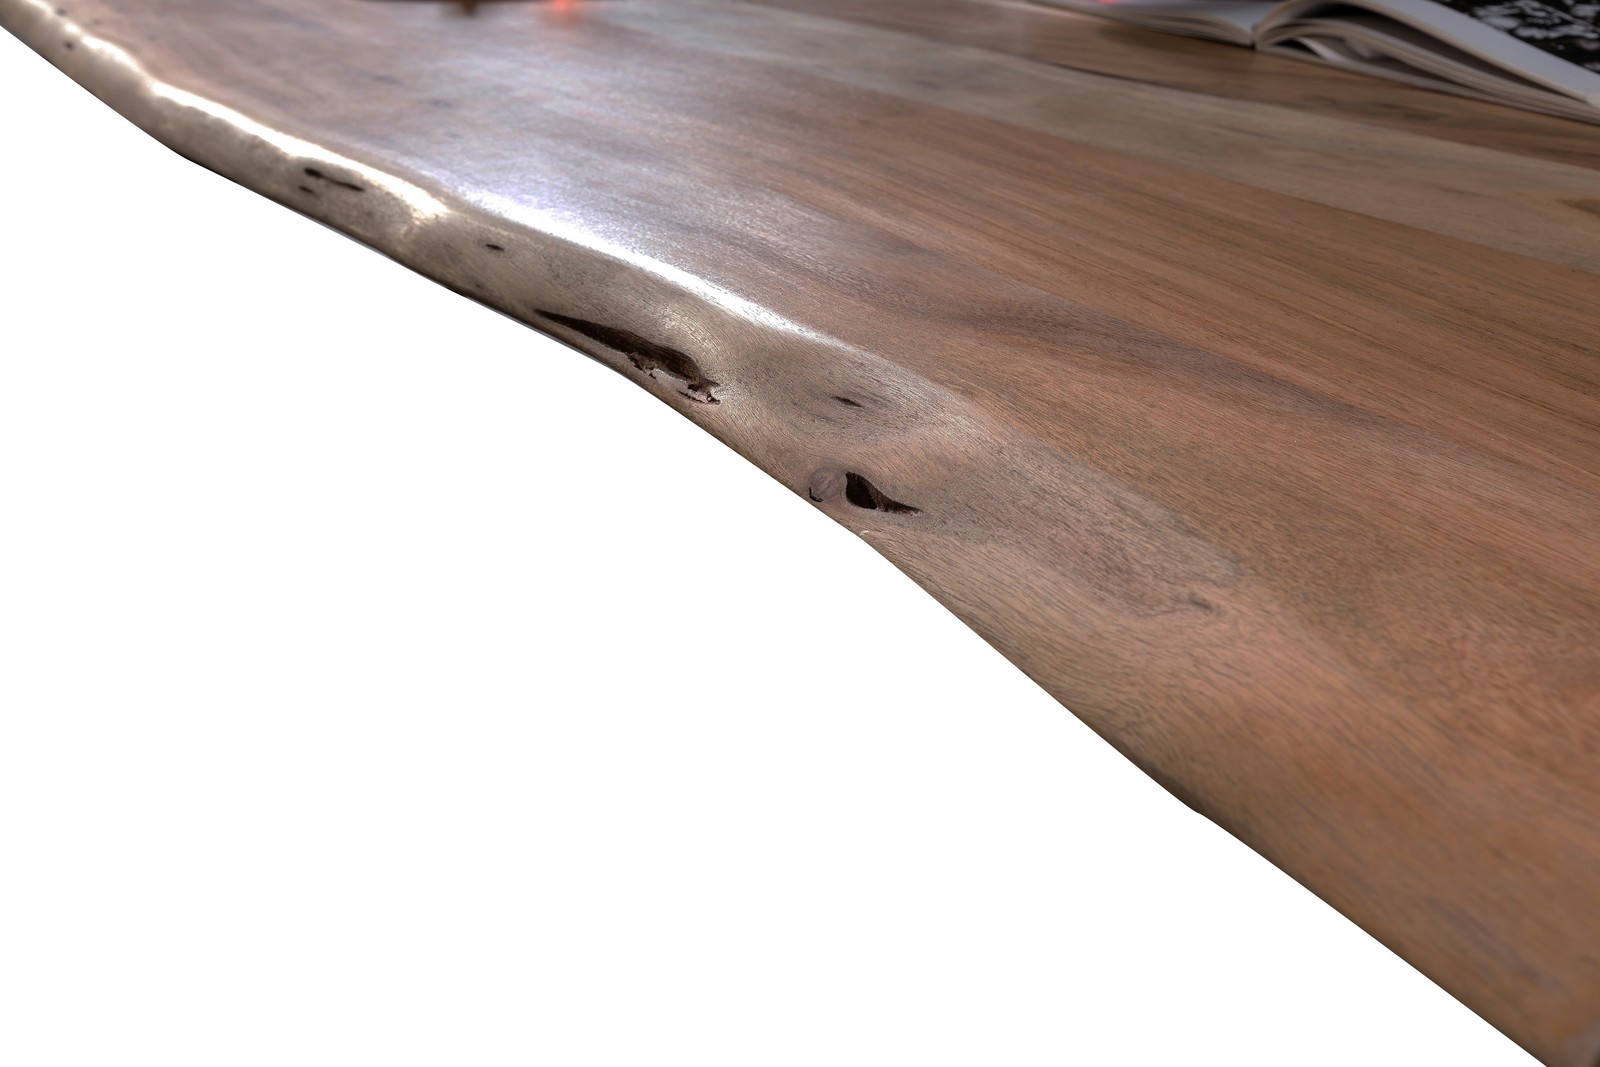 Baumkante-Esstisch TABLES & CO 120 x 80 cm Akazie nussfarben